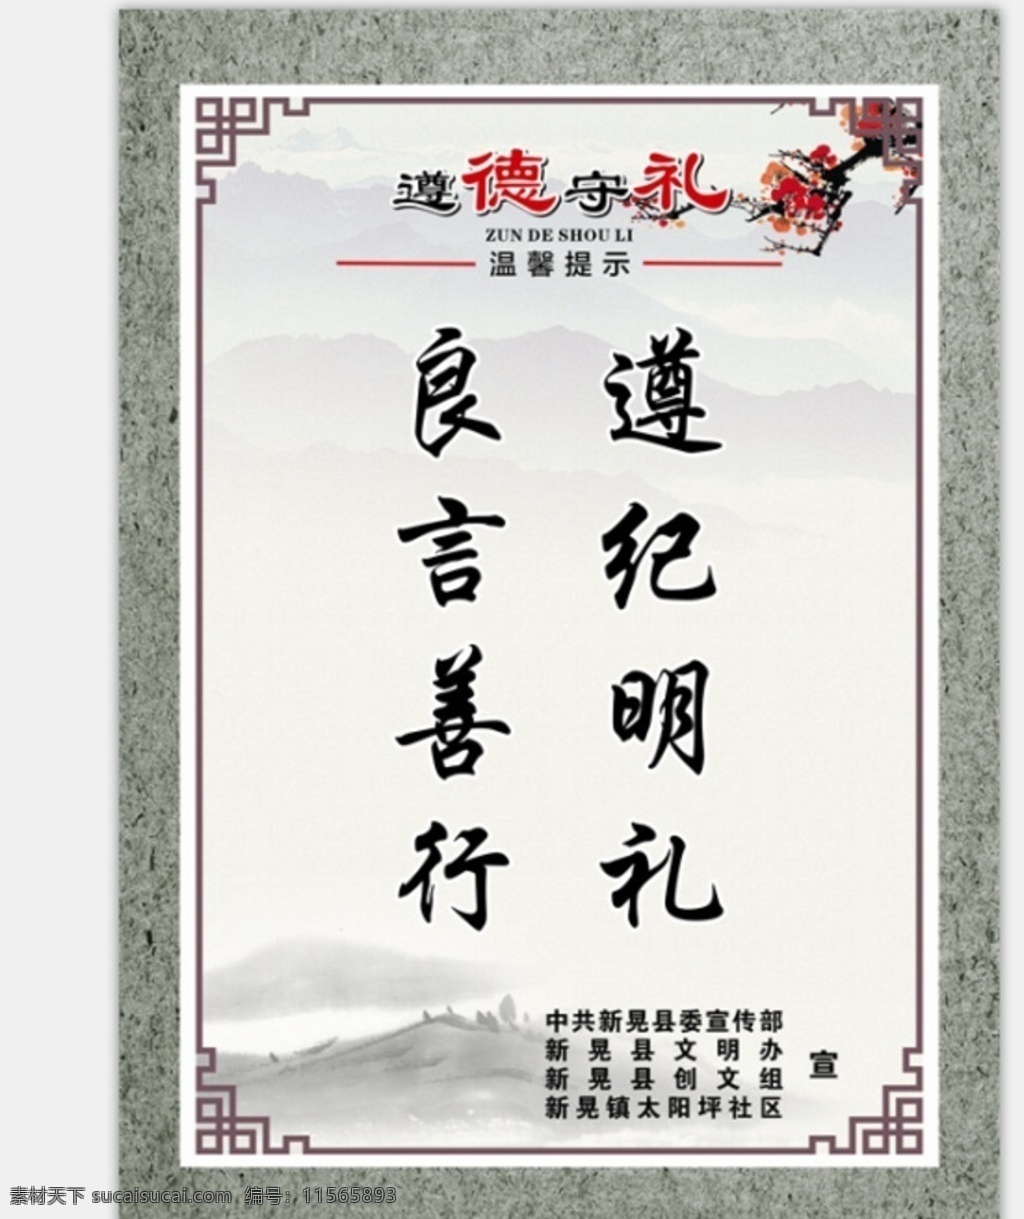 遵德守礼 提示牌 遵德 守礼 古典背景 中国风 中国风背景 展板模板海报